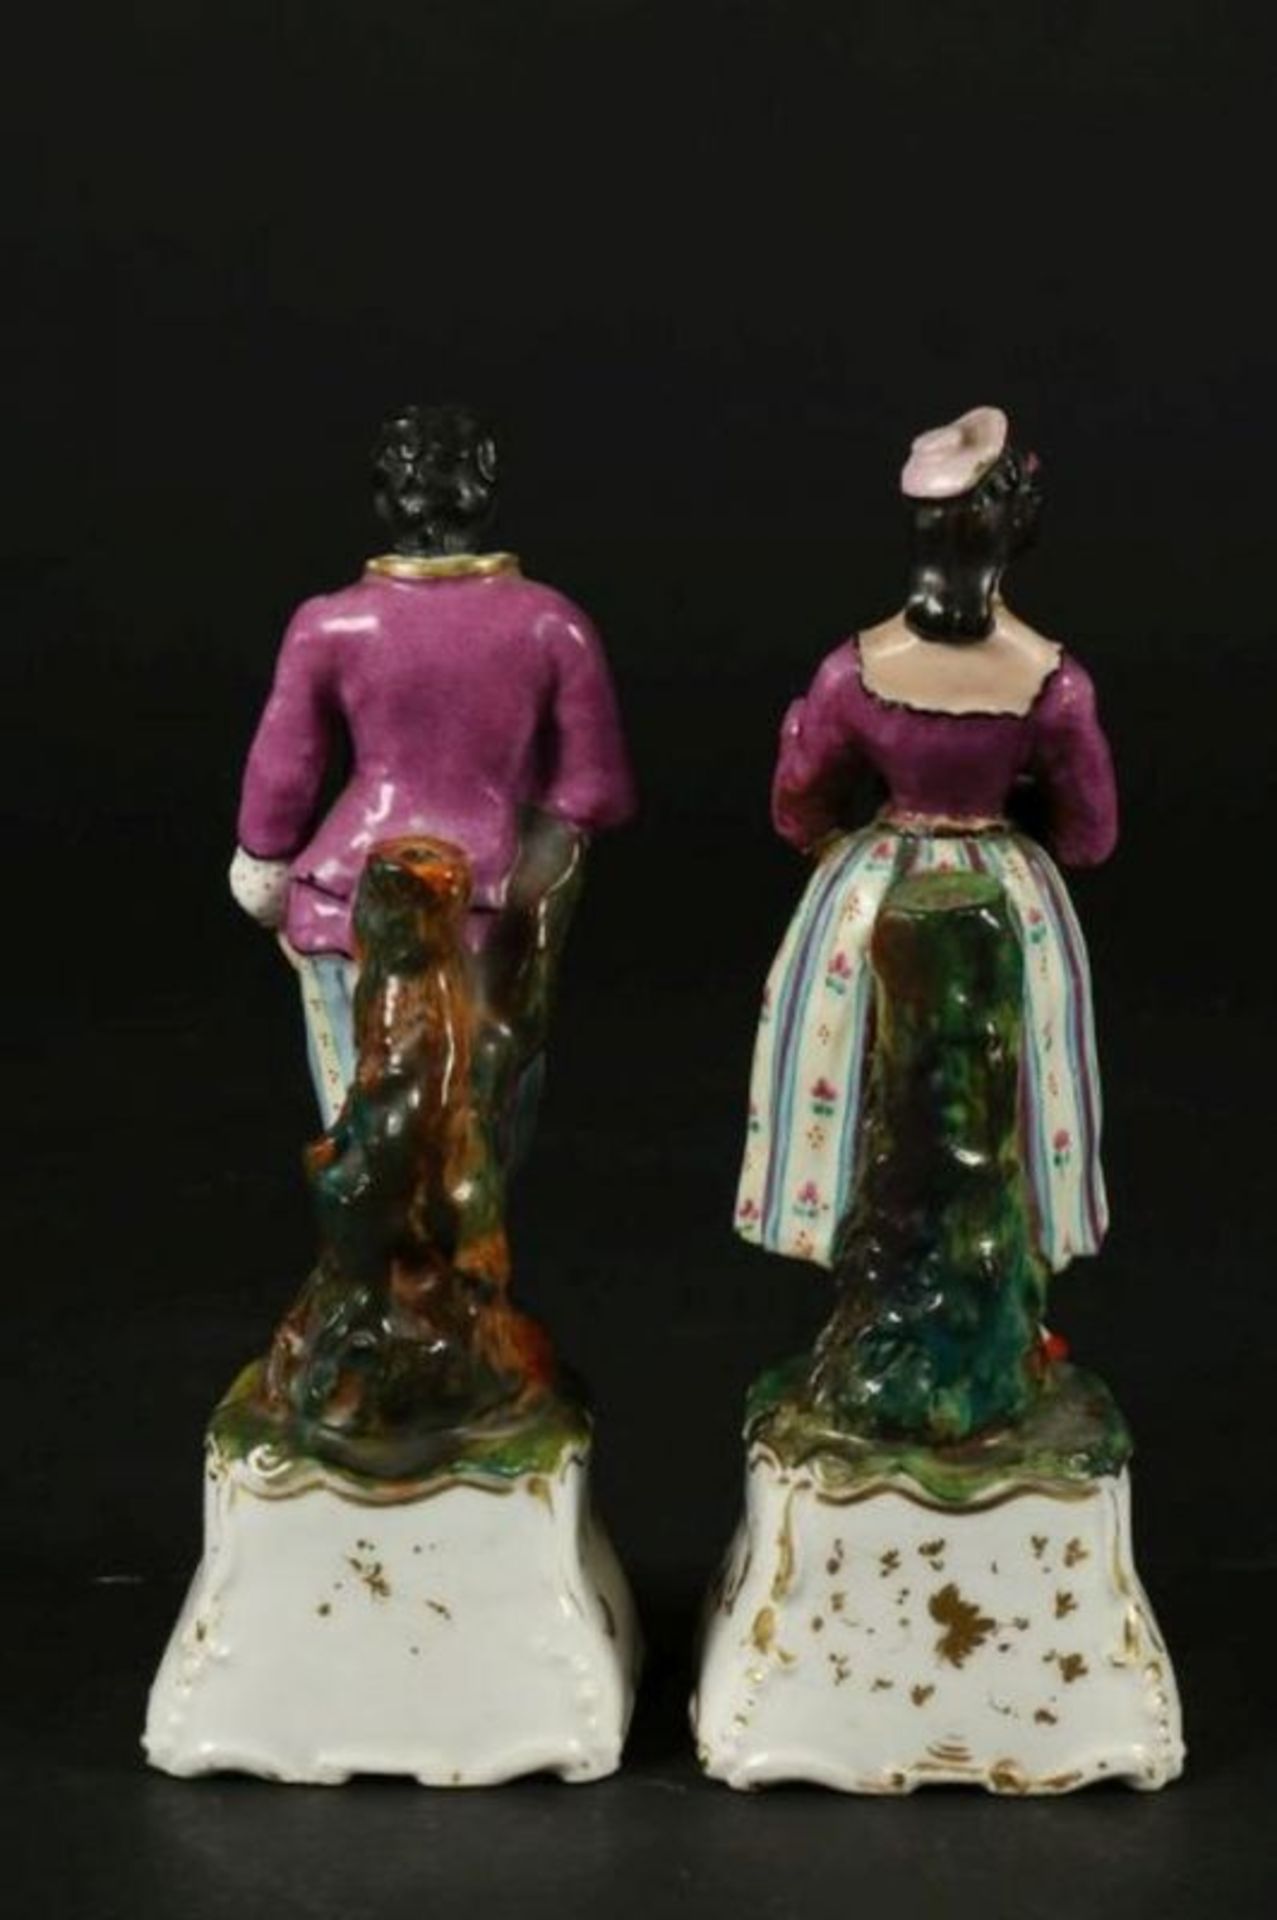 Stel porseleinen likeurflesjes als echtpaar, Duitsland 19e eeuw, h. 19 cm. - Bild 3 aus 4